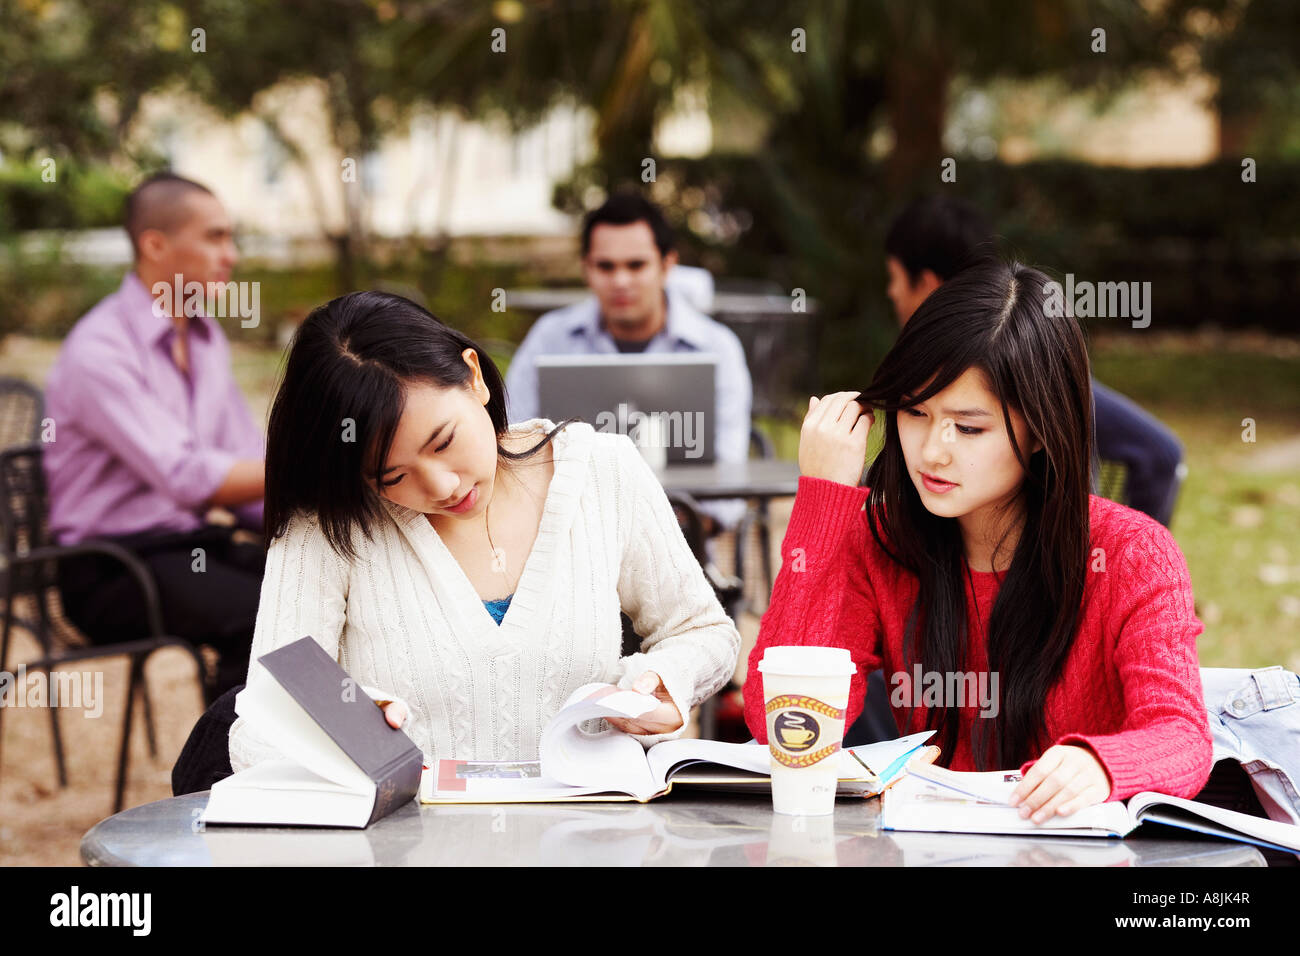 Zwei junge Frauen studieren in einem Uni-Campus mit drei junge Männer sitzen im Hintergrund Stockfoto